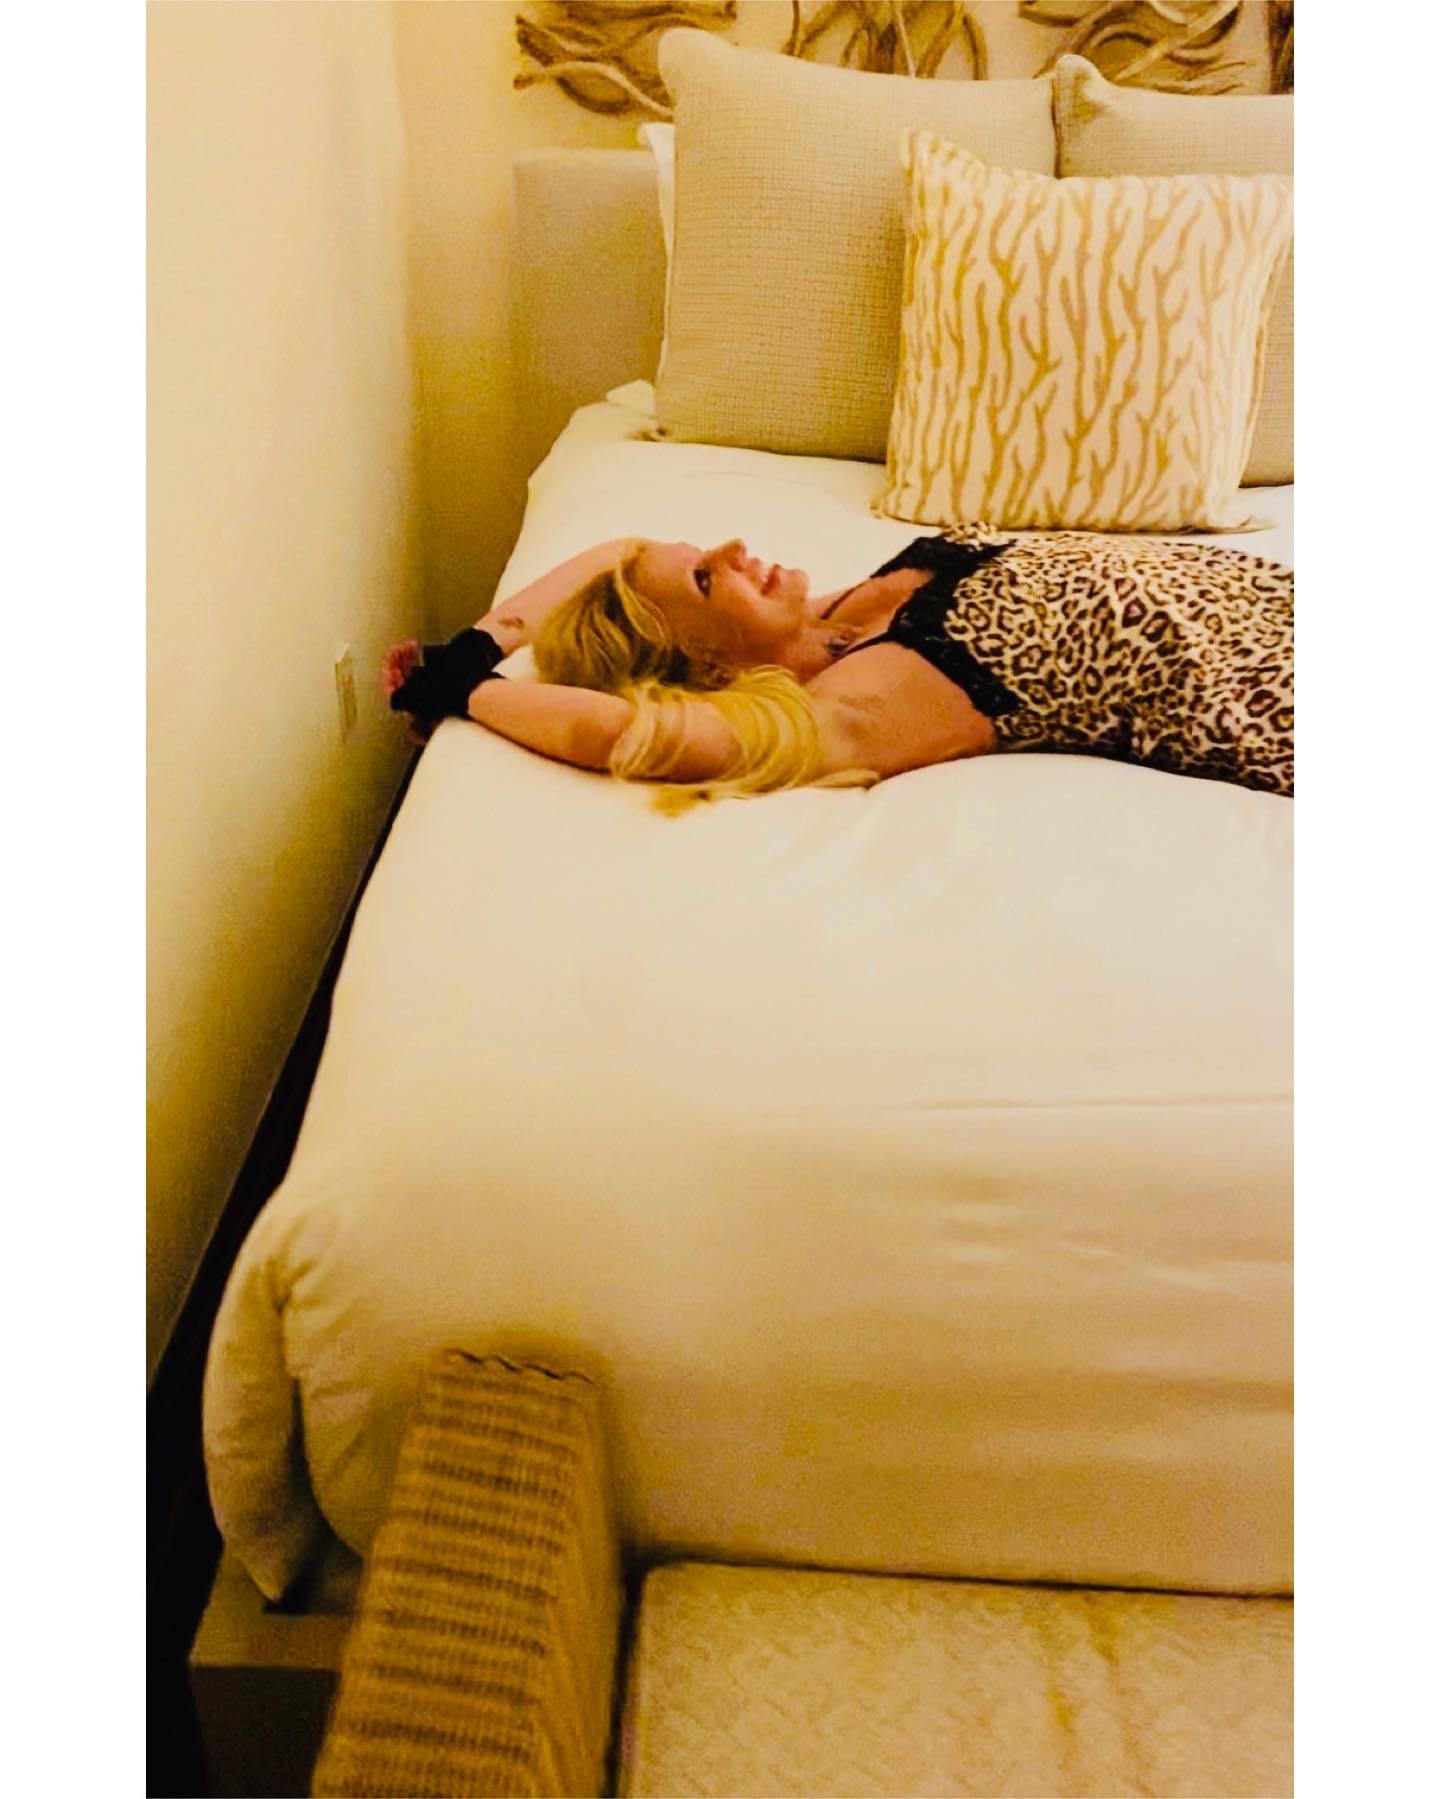 La séance photo à la maison de Britney Spears! - Photo 4